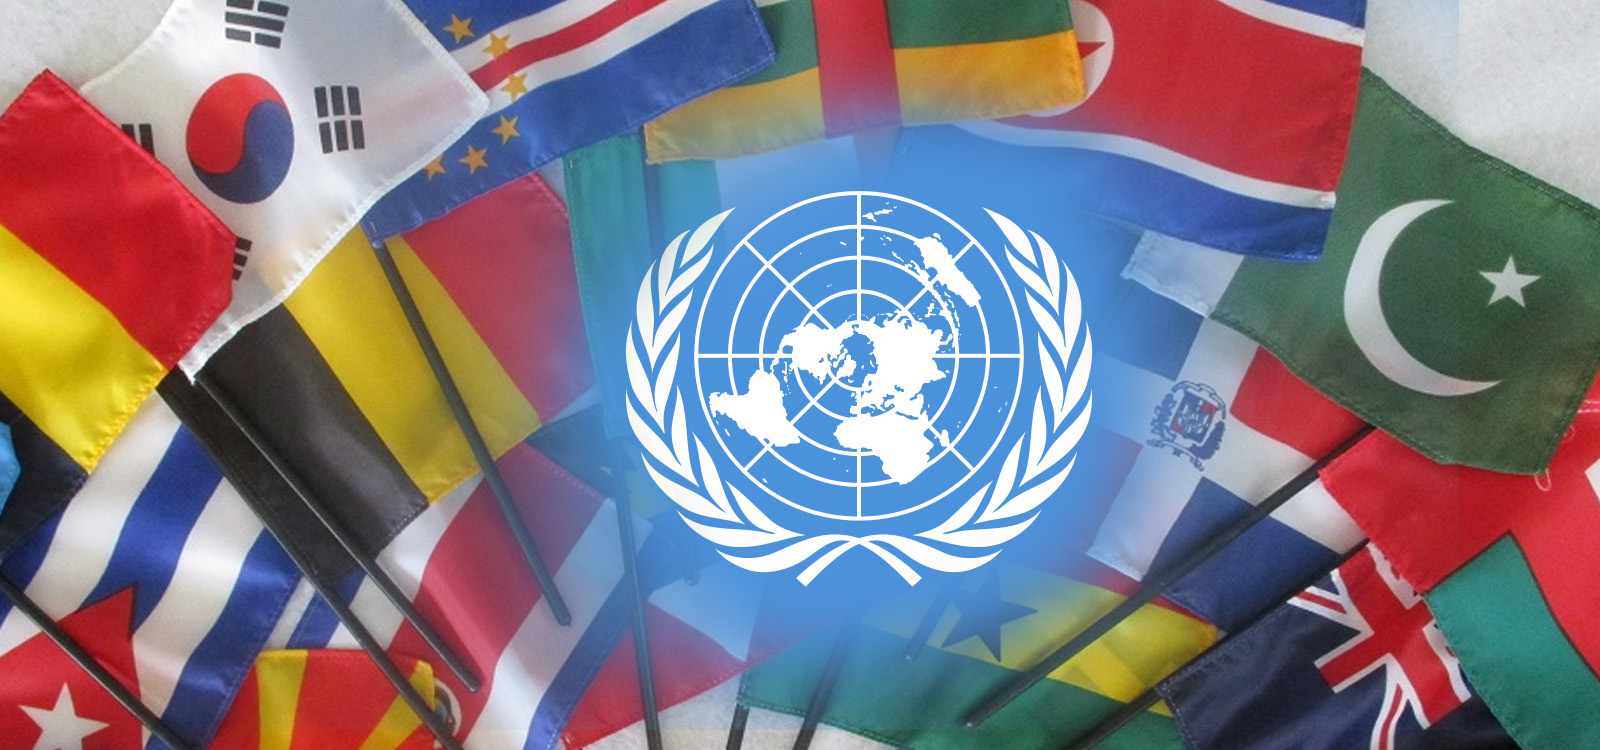 Международные организации оон. Флаги государств входящих в ООН. Совет безопасности ООН флаг. Мир 193 государства-члены организации Объединенных наций. Организация Объединённых наций государства — члены ООН.